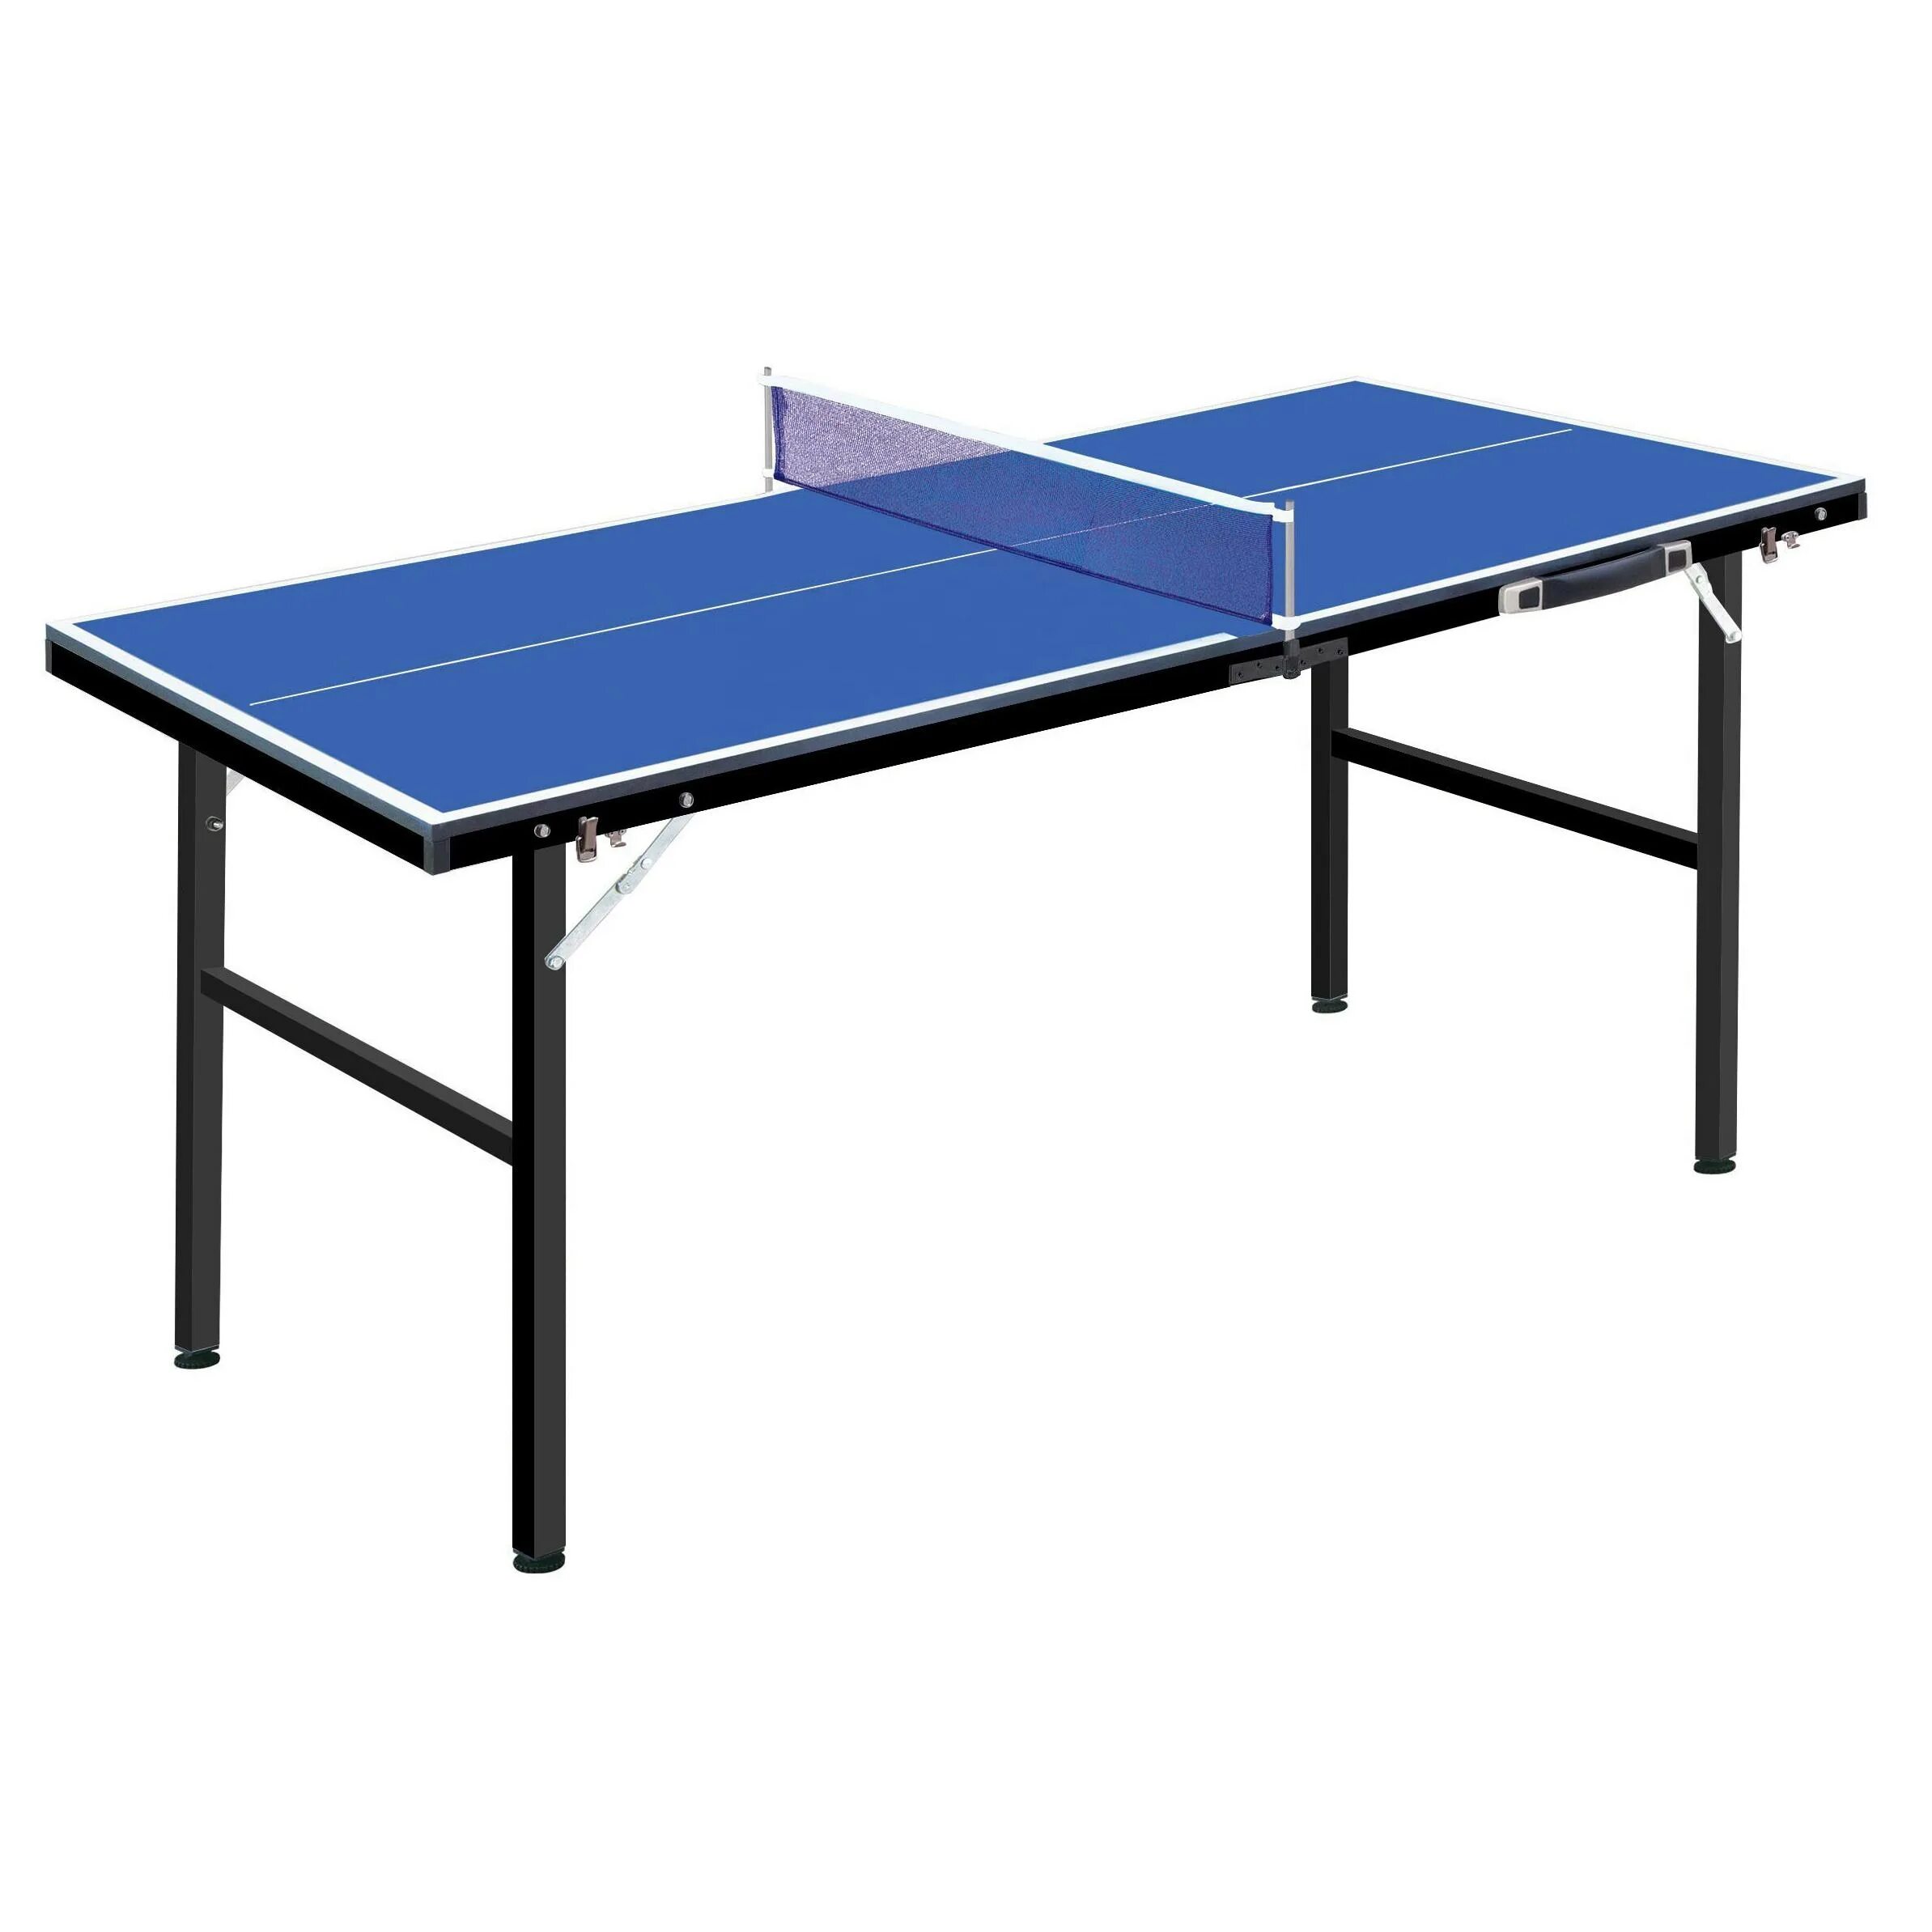 Мини стол для пинг понга. Мини стол для настольного тенниса. Стол для мини тенниса. Теннисный стол складной. Стол для пинпонга